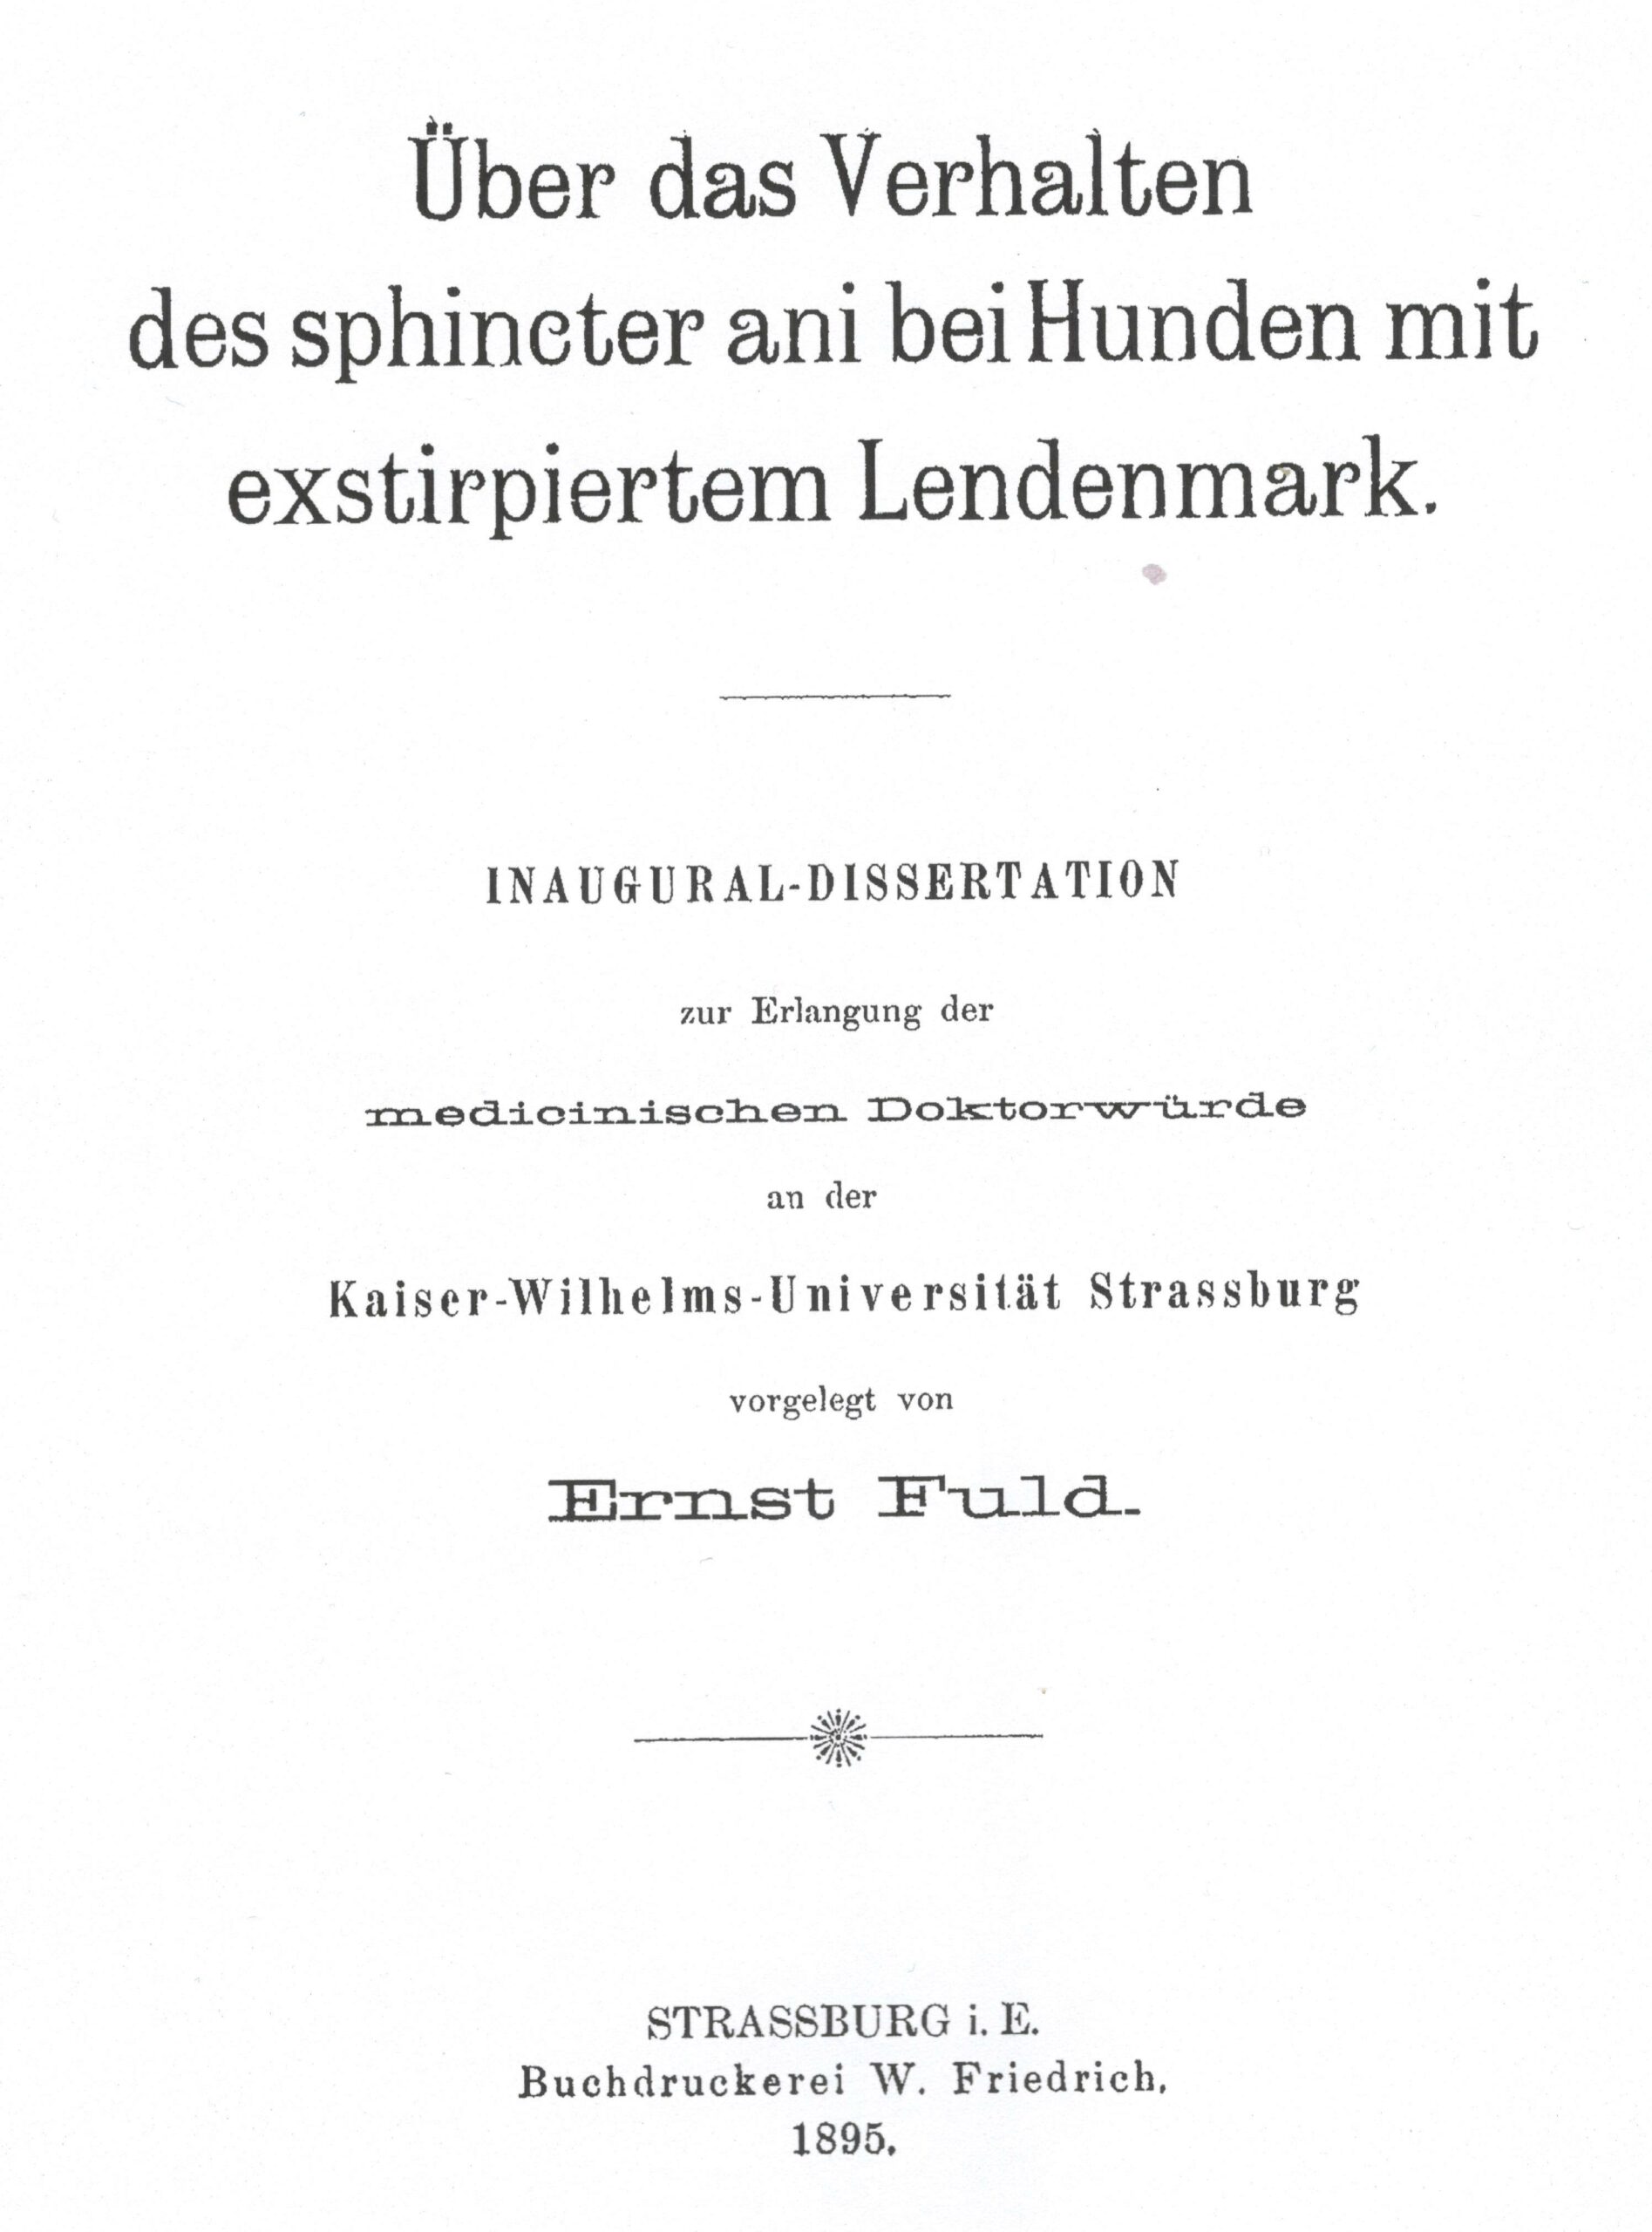 Dissertation, Strasbourg 1895